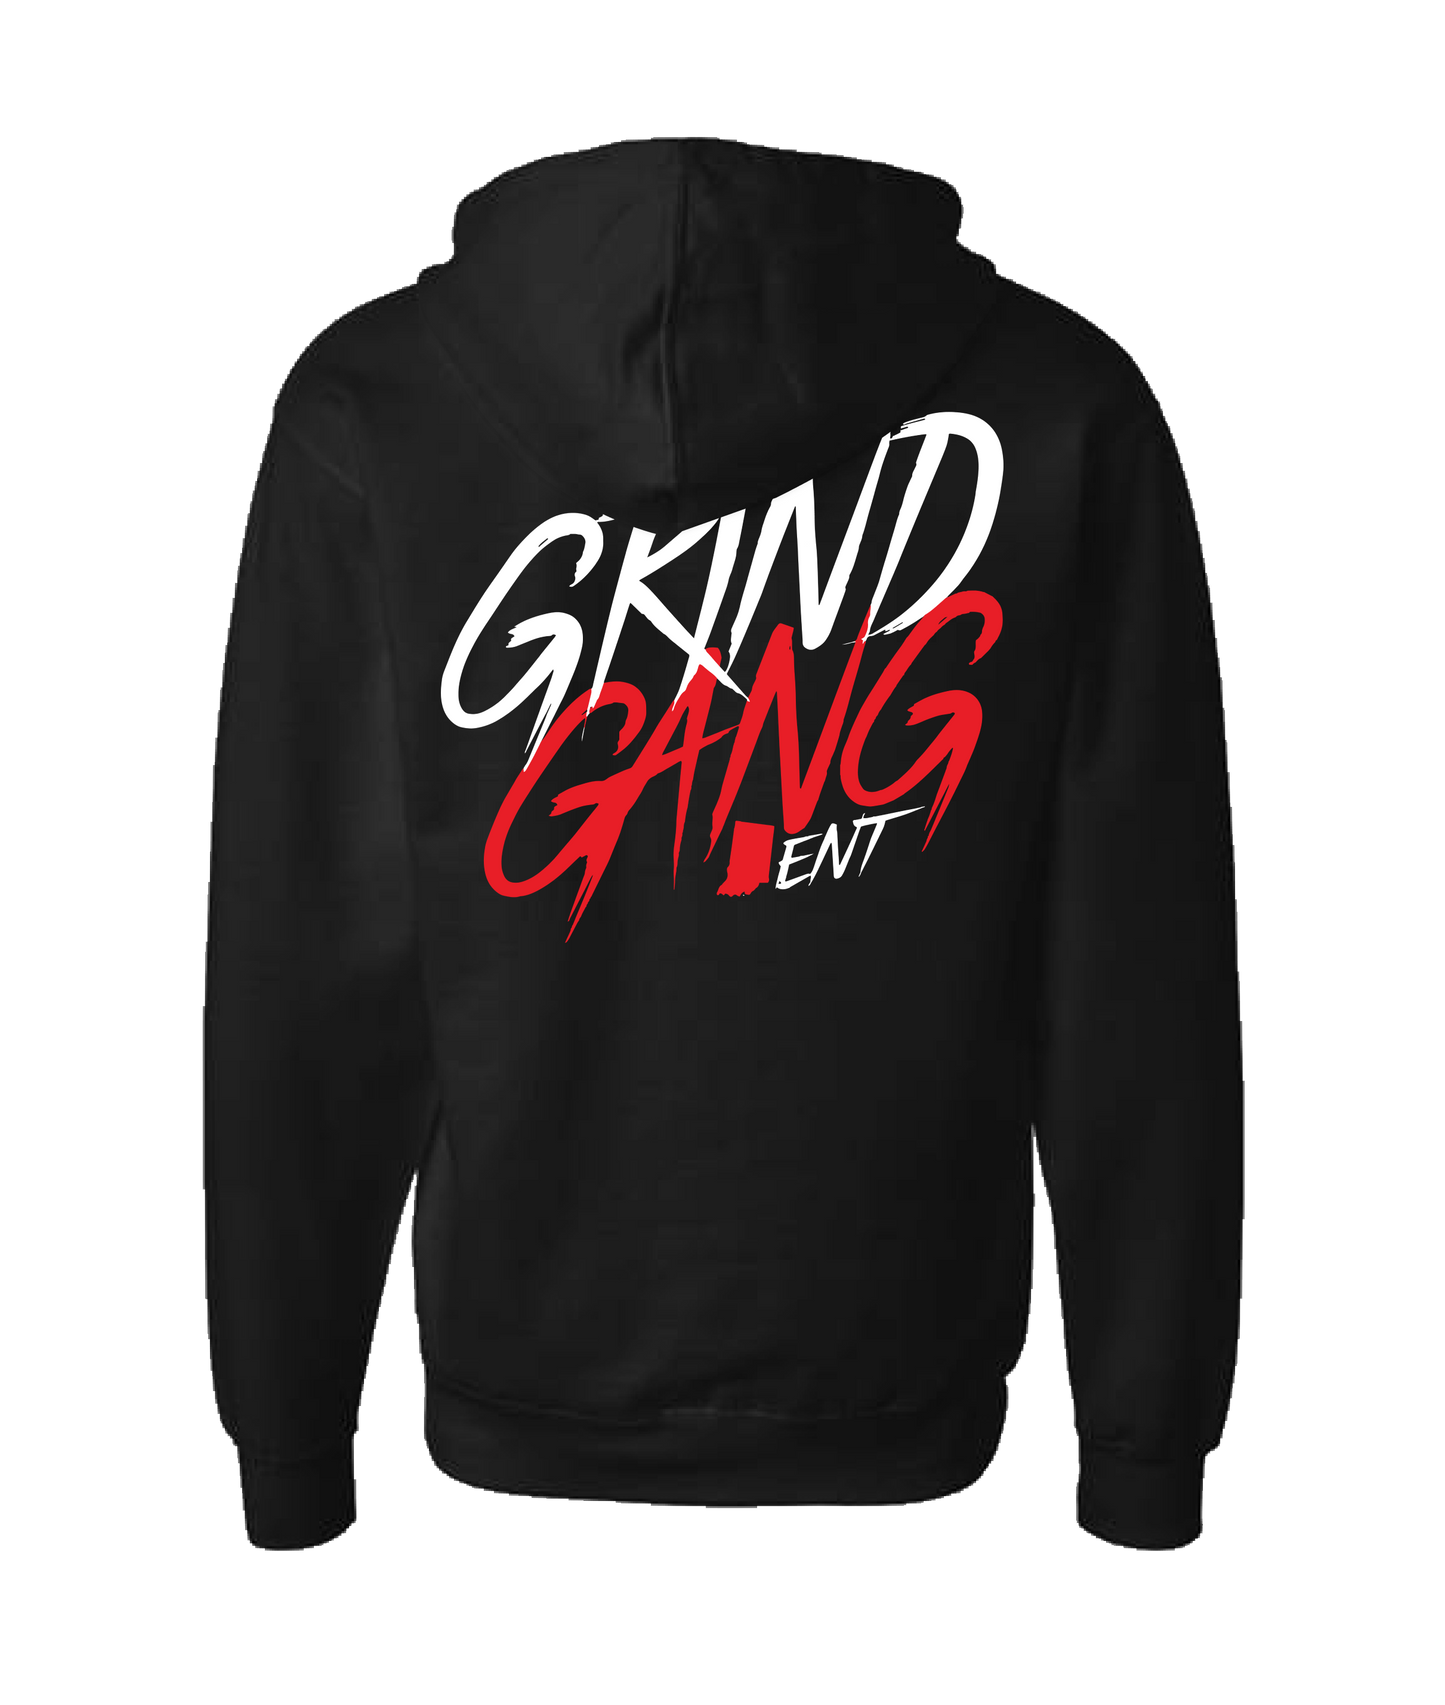 GRIND GANG ENT. LLC - INDIANA GRIND 1 - Black Zip Up Hoodie